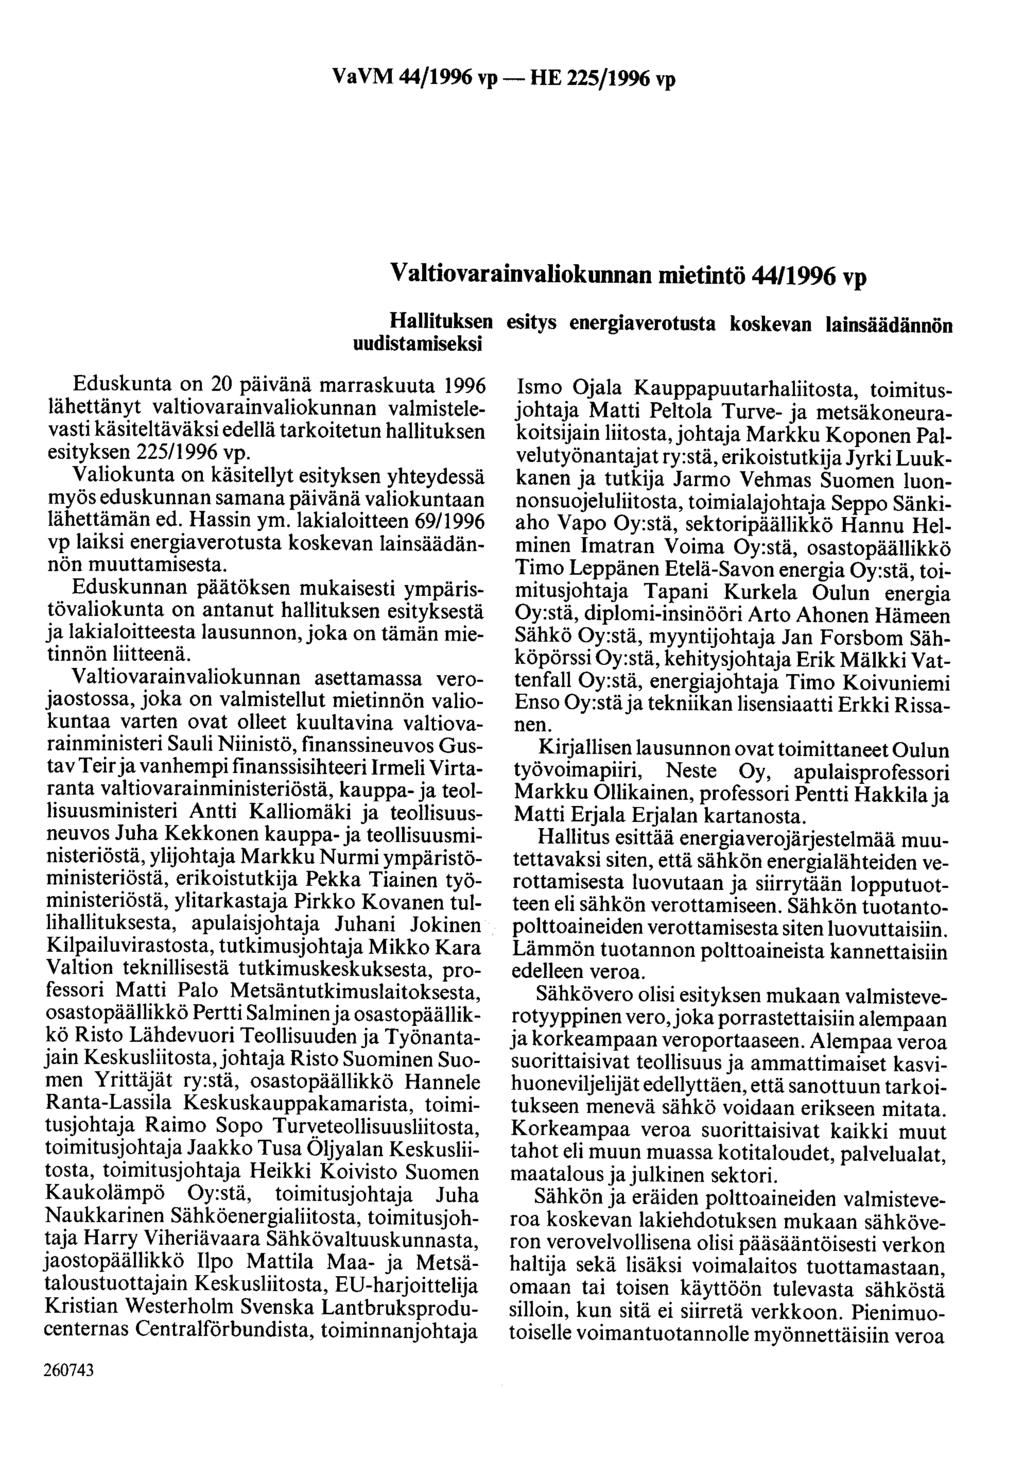 VaVM 44/1996 vp- HE 225/1996 vp Valtiovarainvaliokunnan mietintö 44/1996 vp Hallituksen esitys energiaverotusta koskevan lainsäädännön uudistamiseksi Eduskunta on 20 päivänä marraskuuta 1996